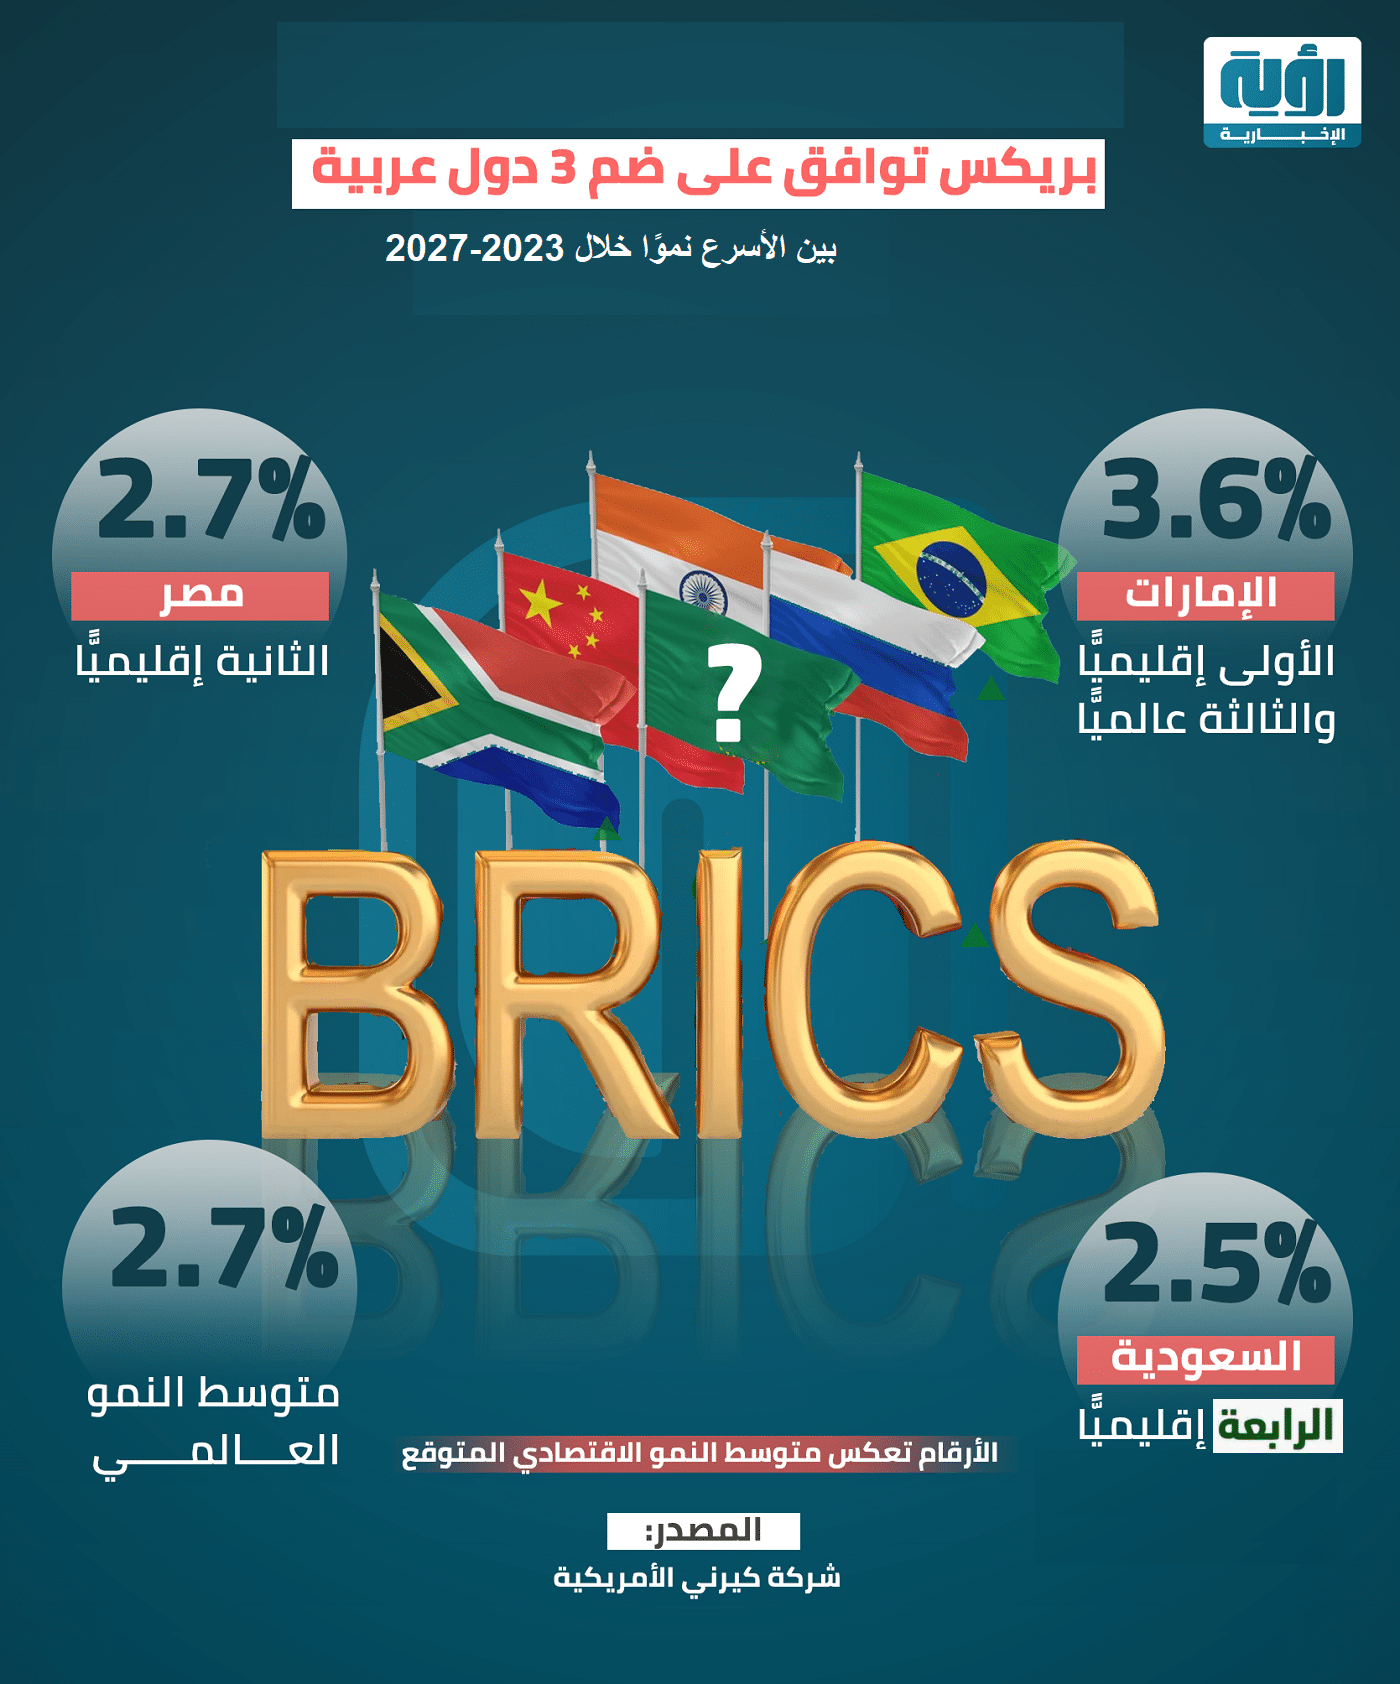 بريكس توافق على ضم 3 دول عربية من الأسرع نموًّا 2